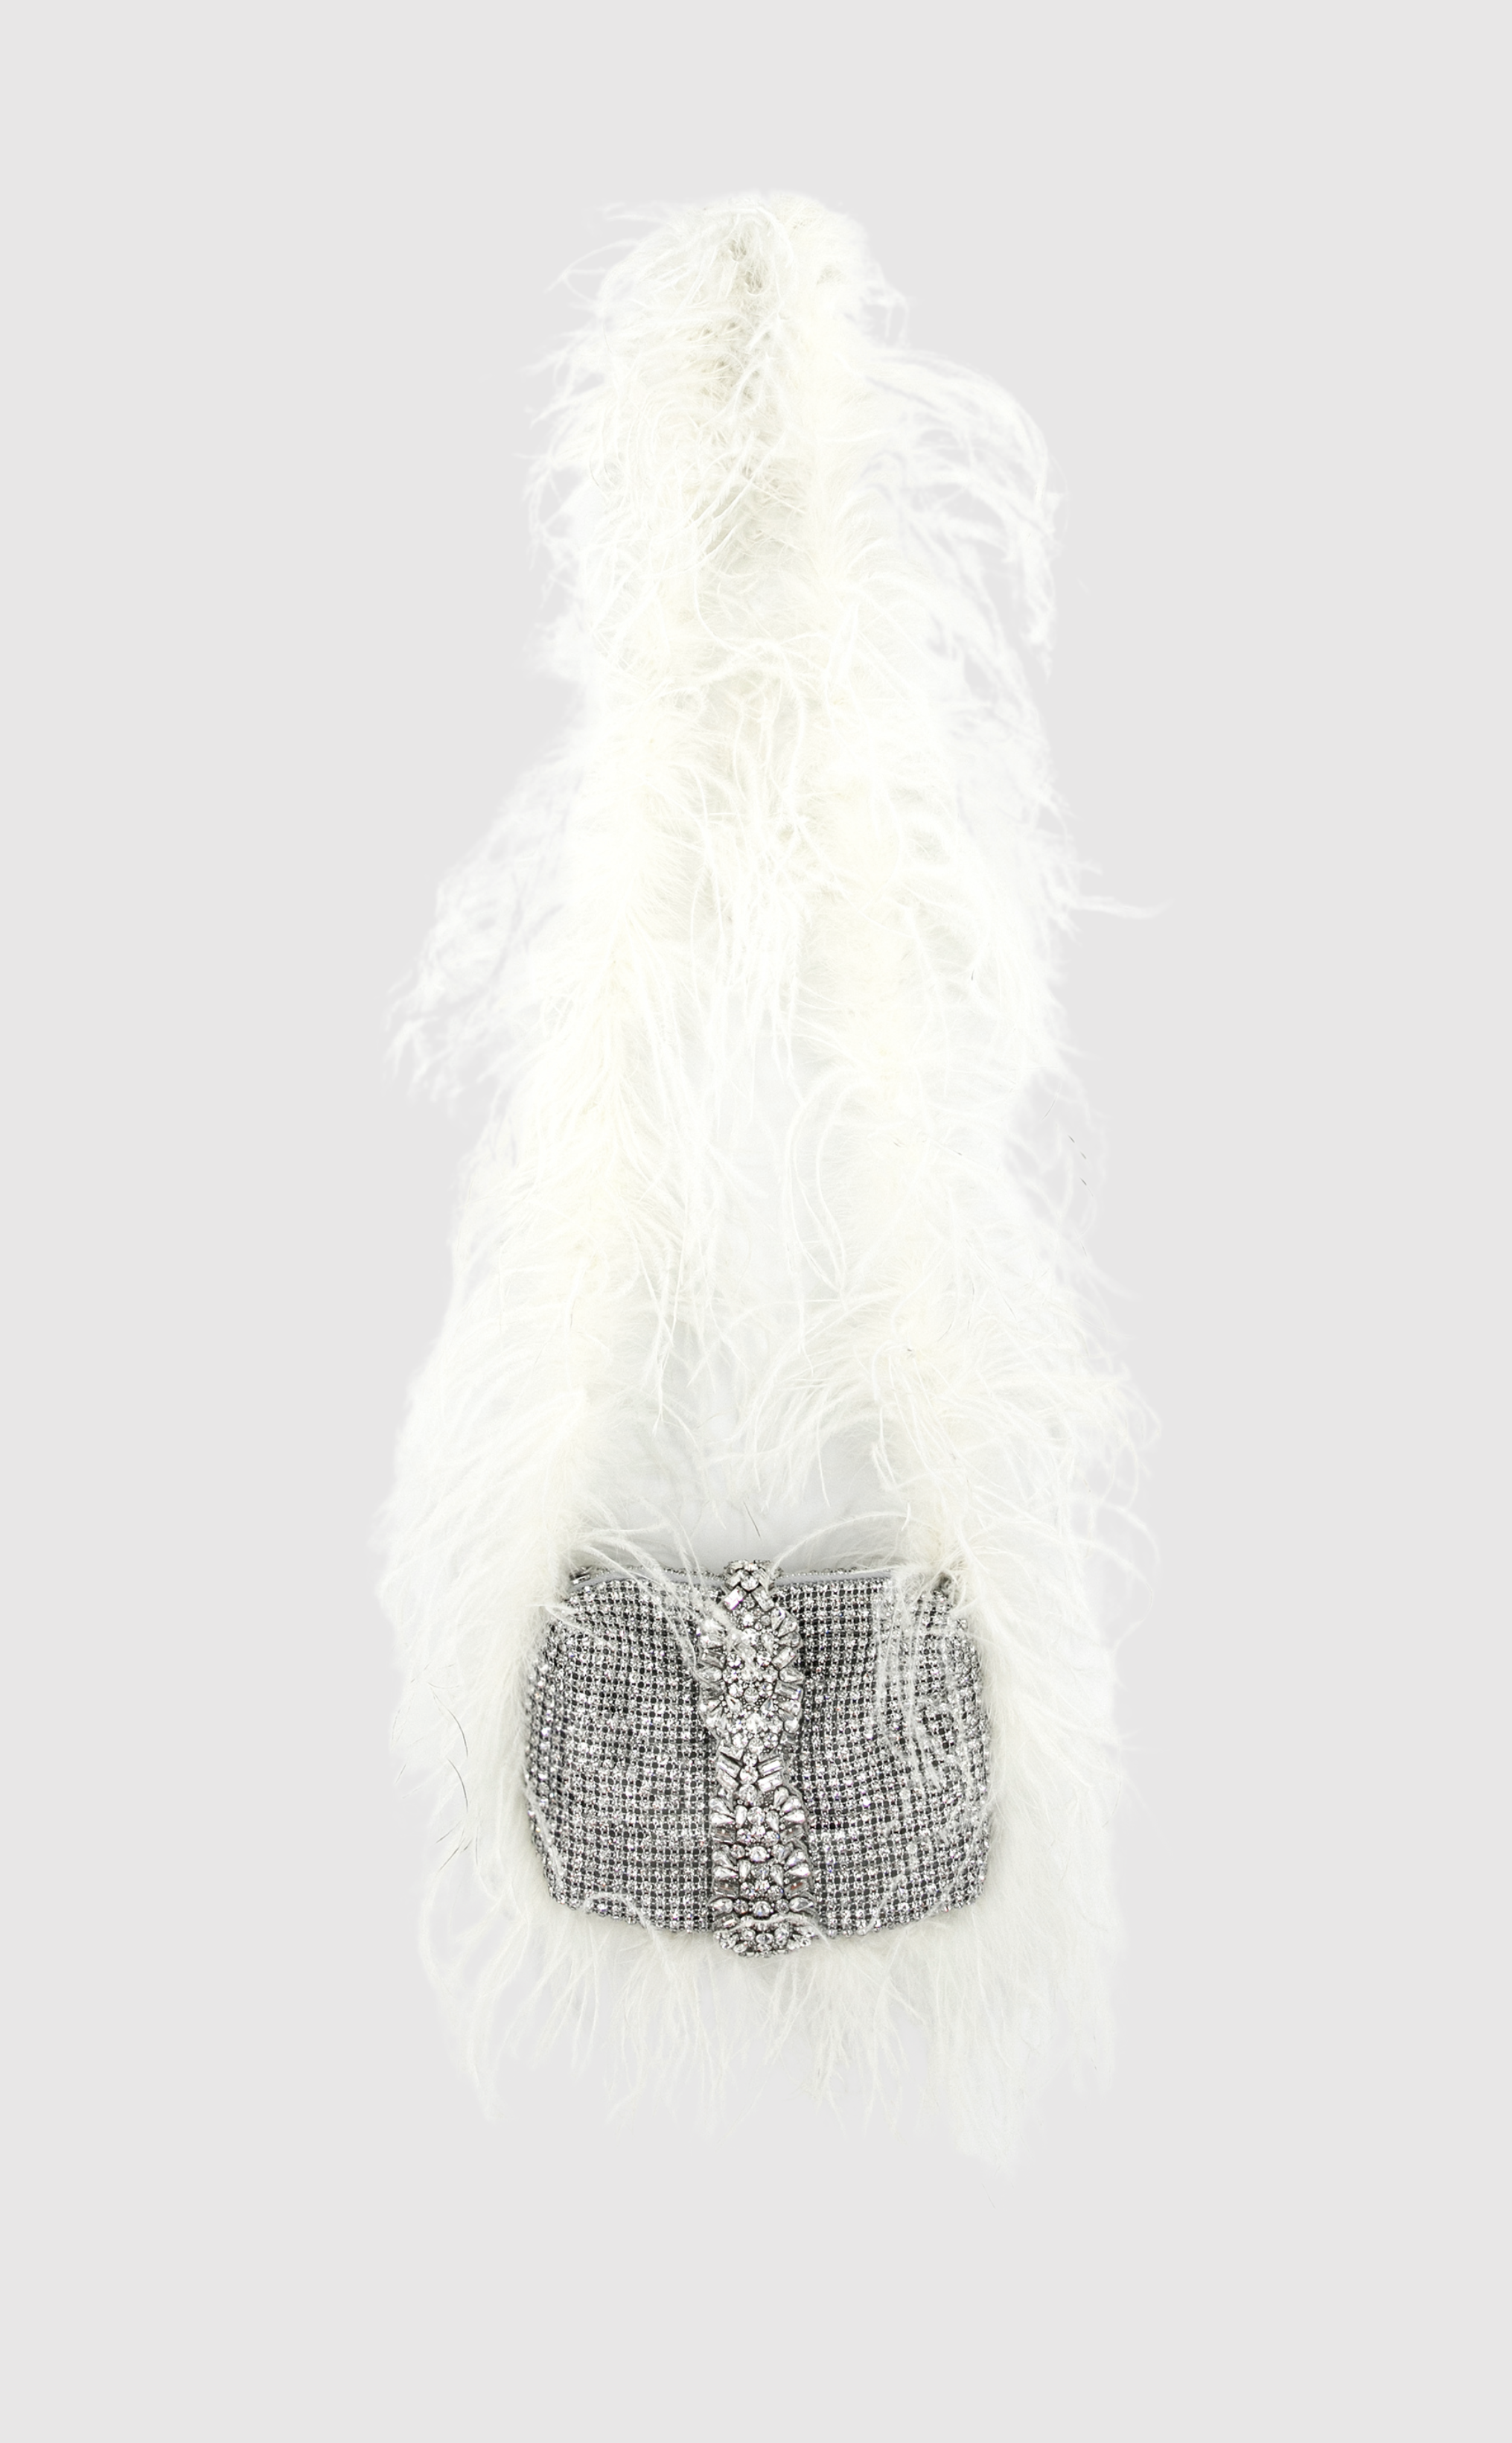 Gigi crystal purse